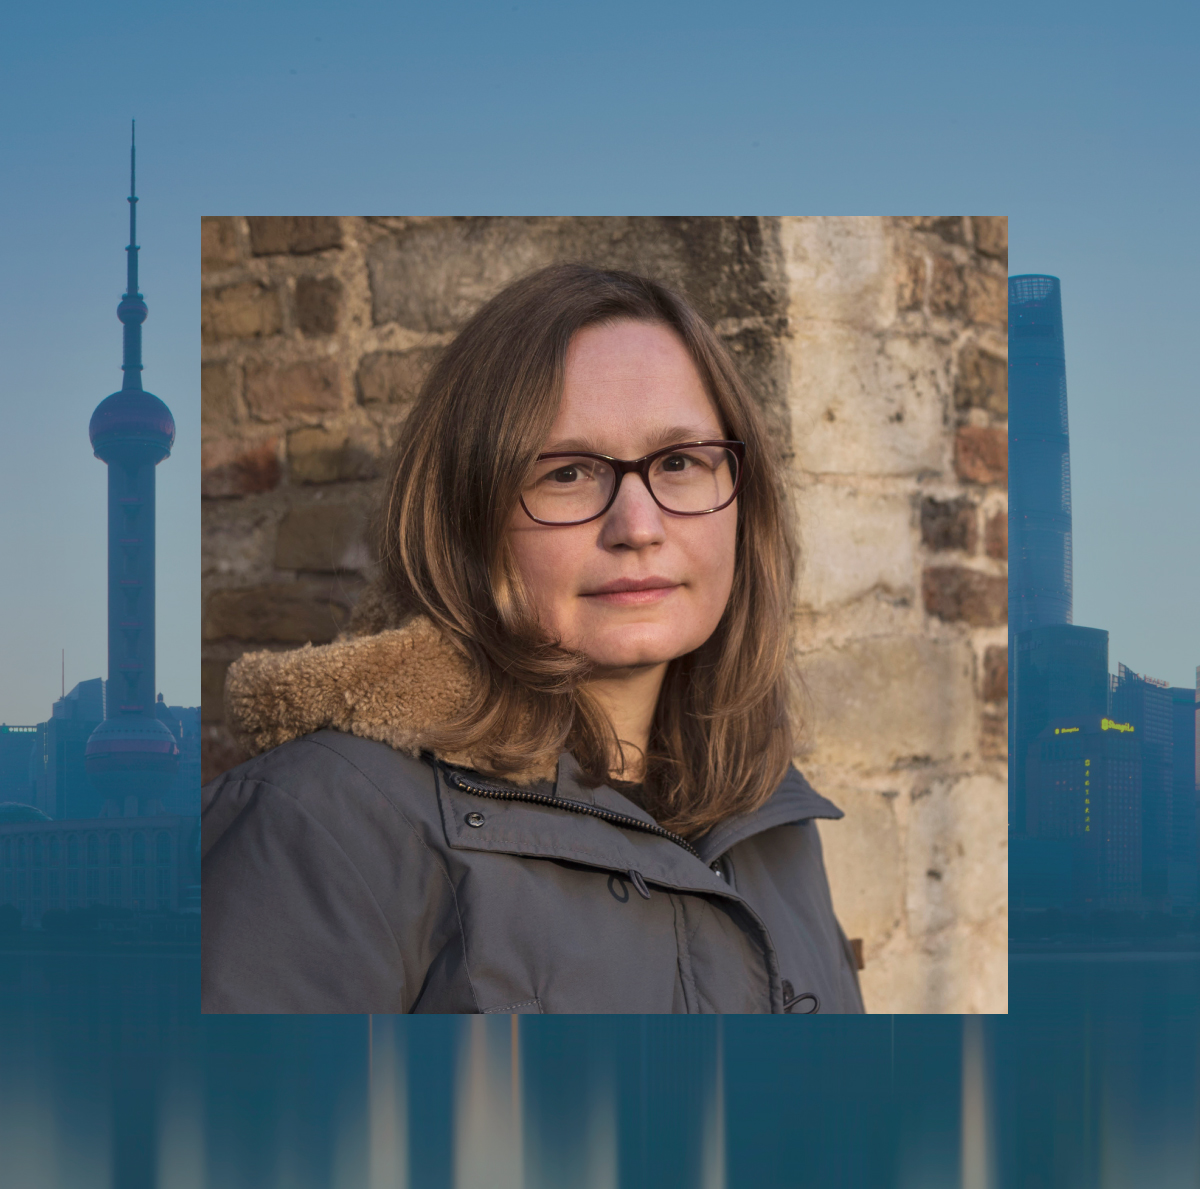 NYU Shanghai professor Lena Scheen with the Shanghai skyline behind her.